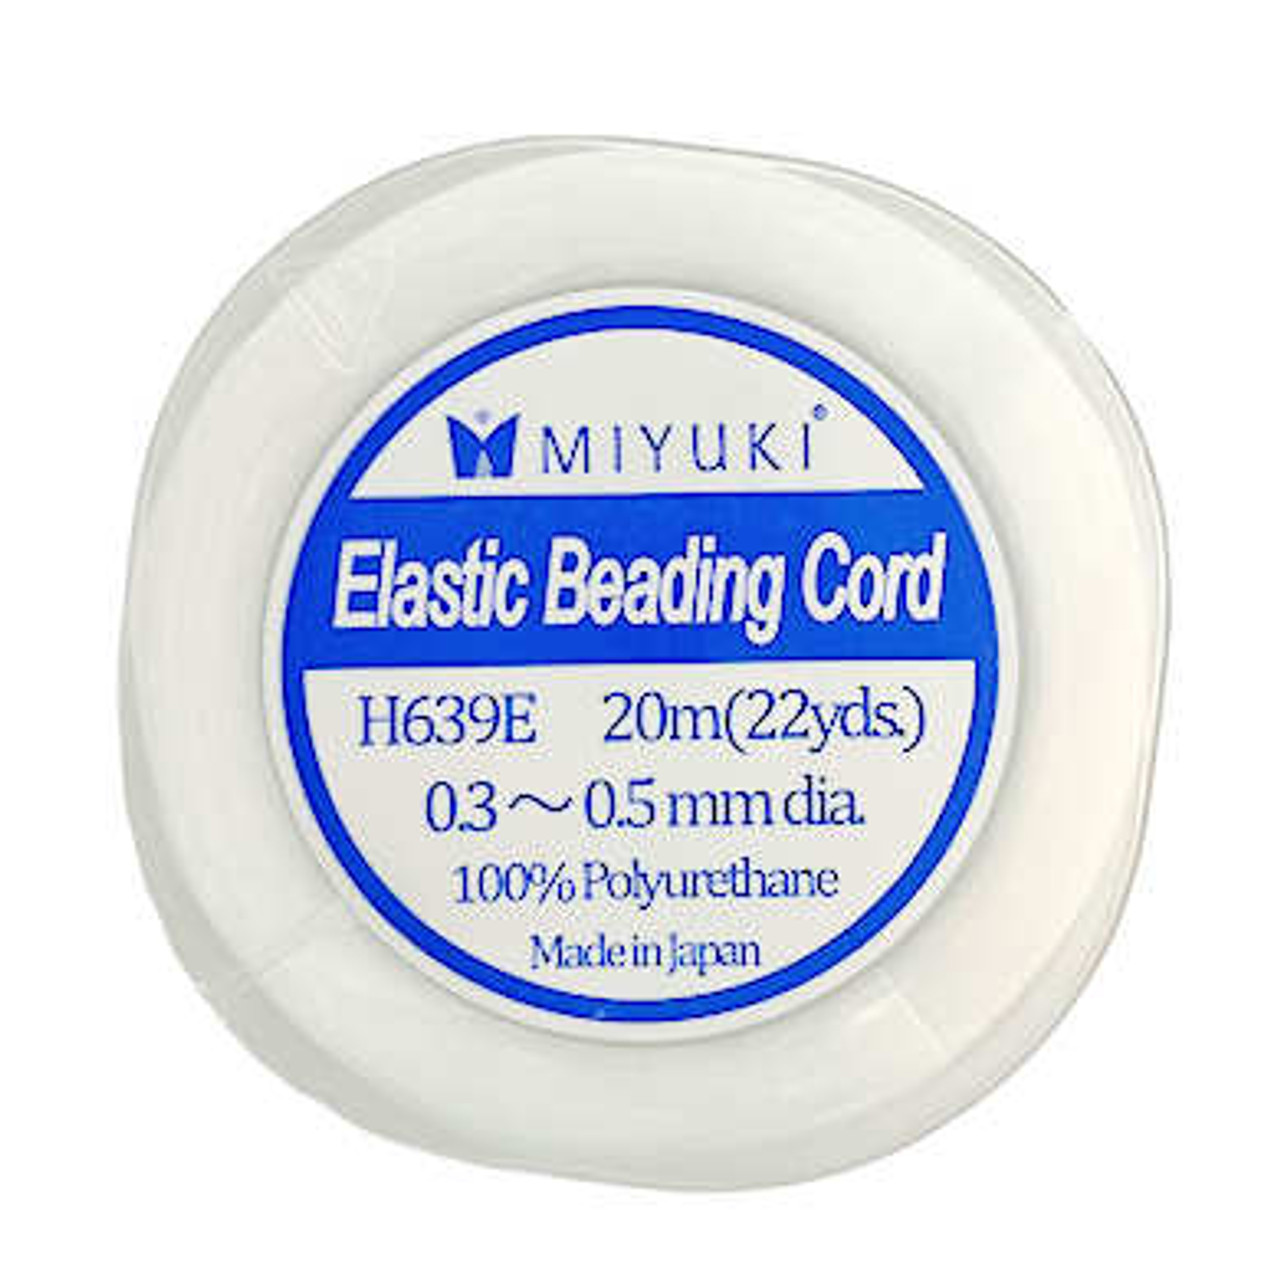 Miyuki Elastic Beading Cord, 0.3~0.5mm diam. (22 yds) - Jill